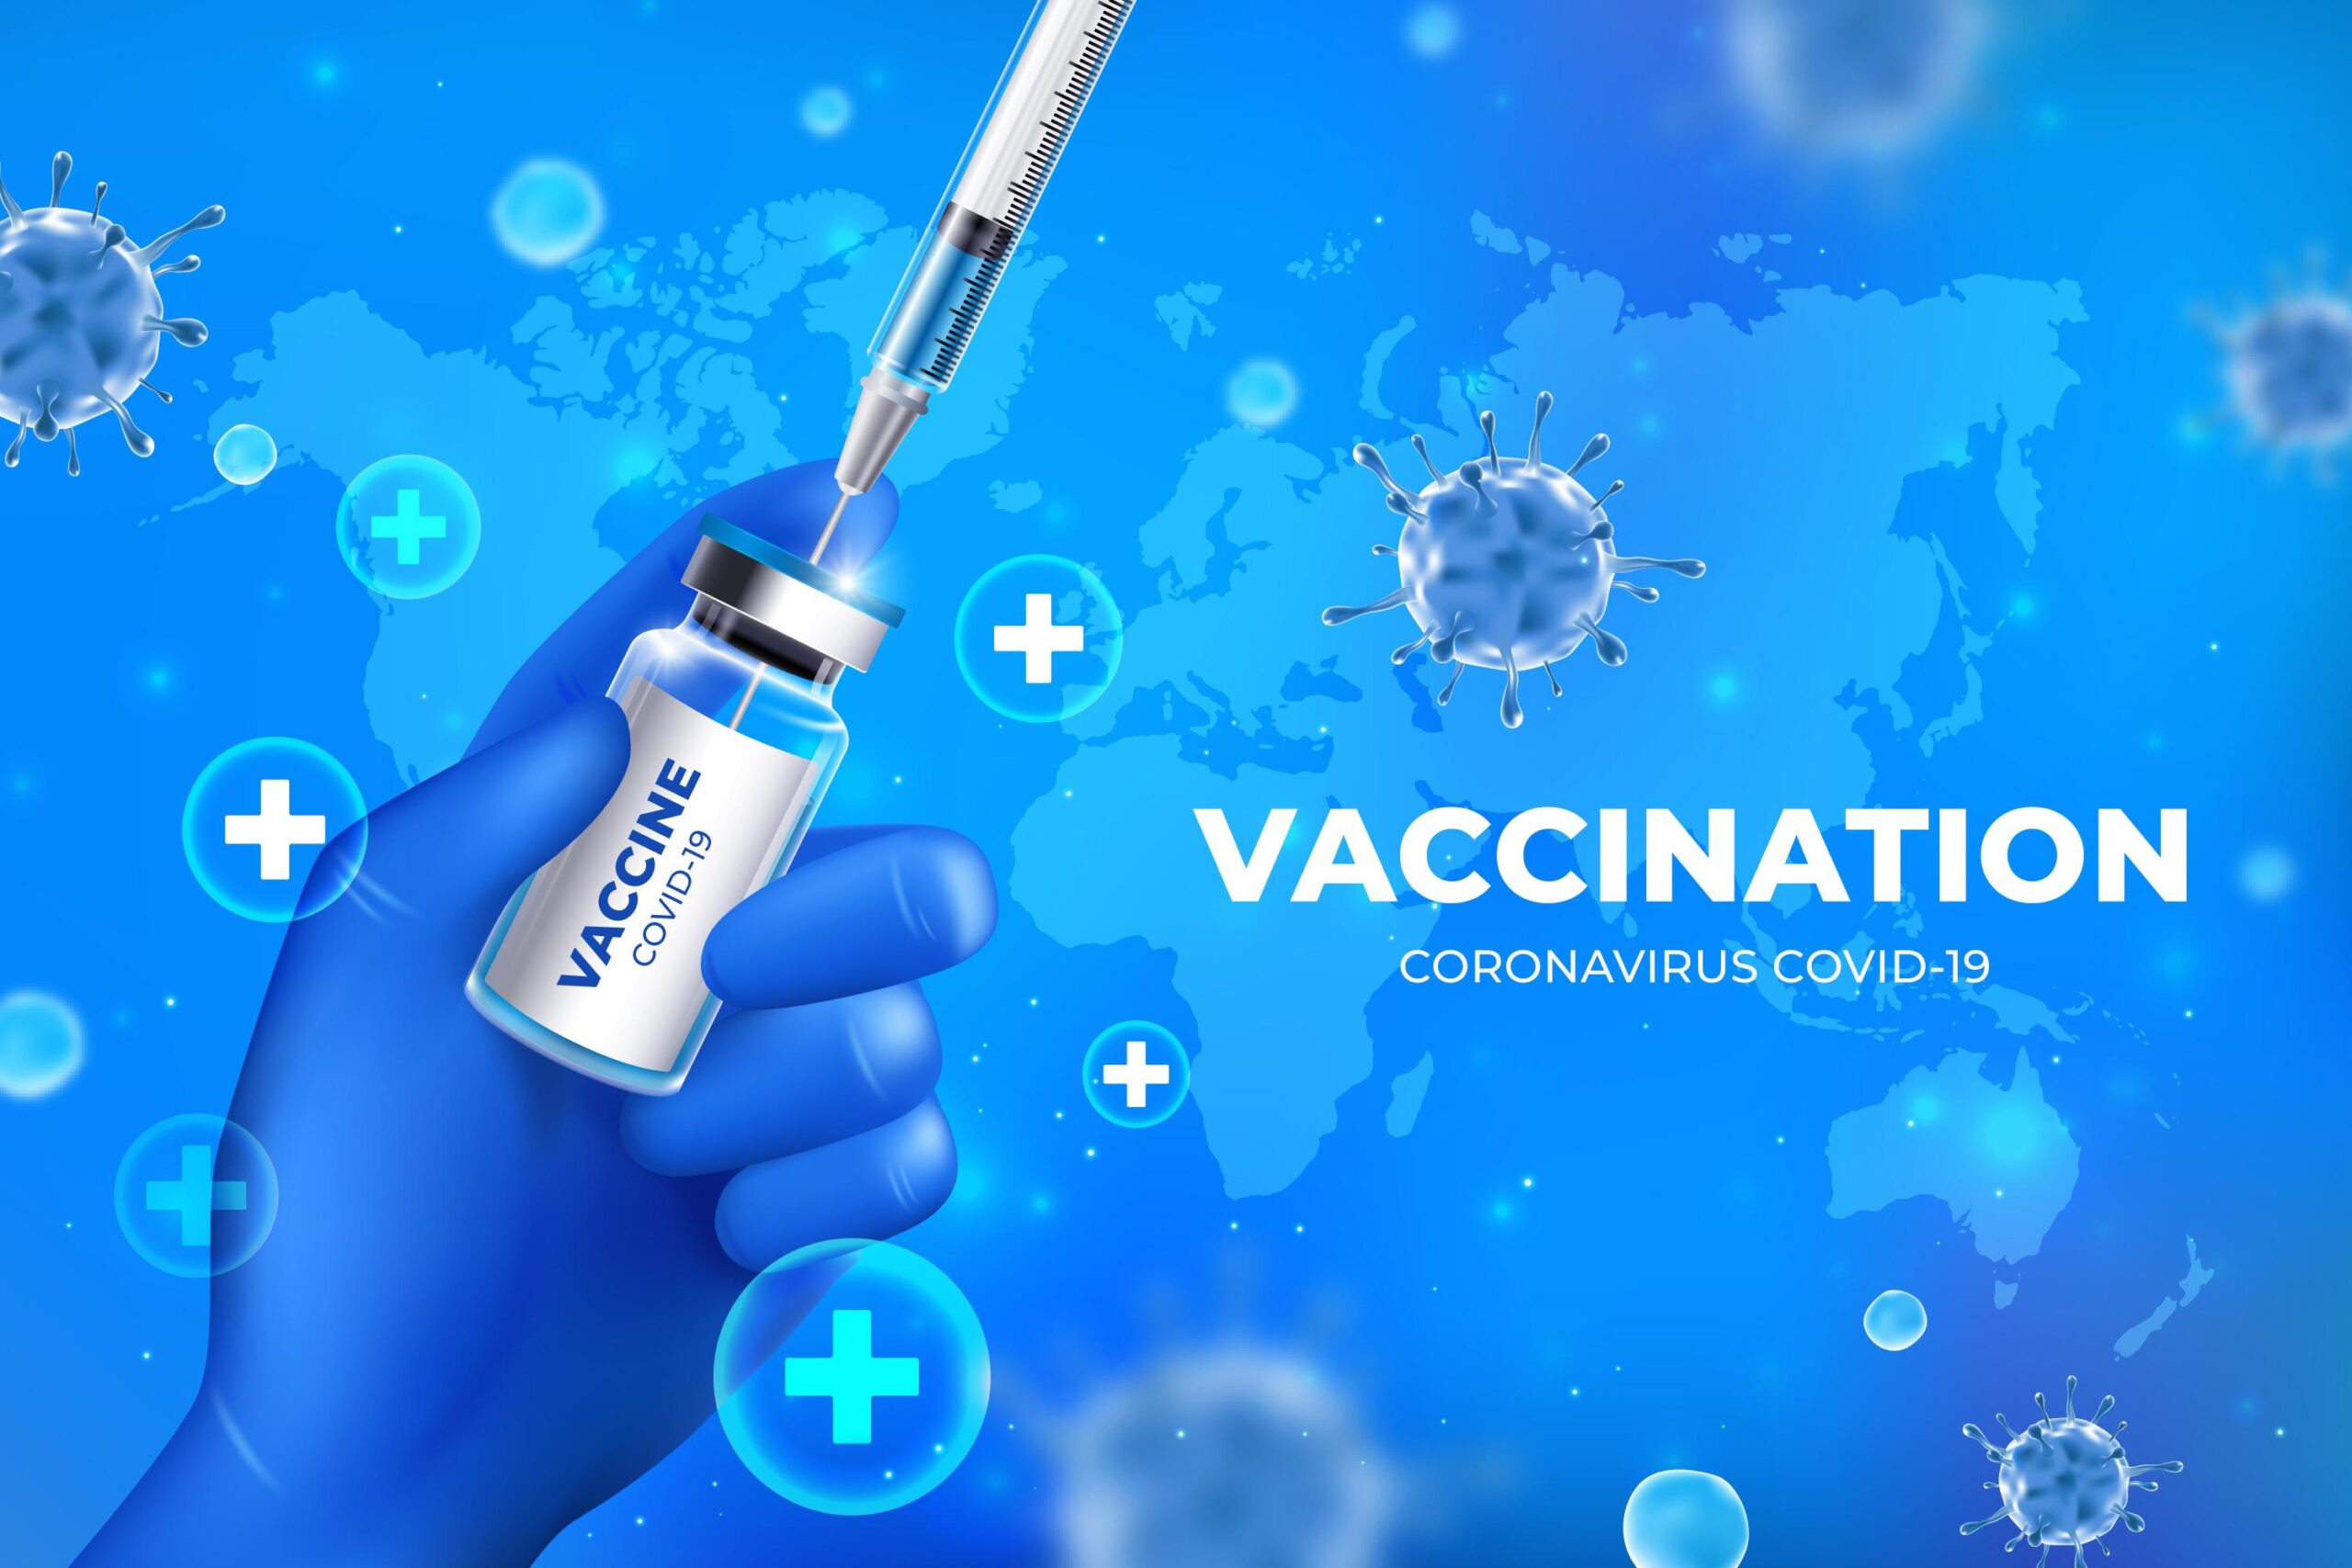 公費流感疫苗剩11萬餘劑   2/5起50歲以上發放免費快篩